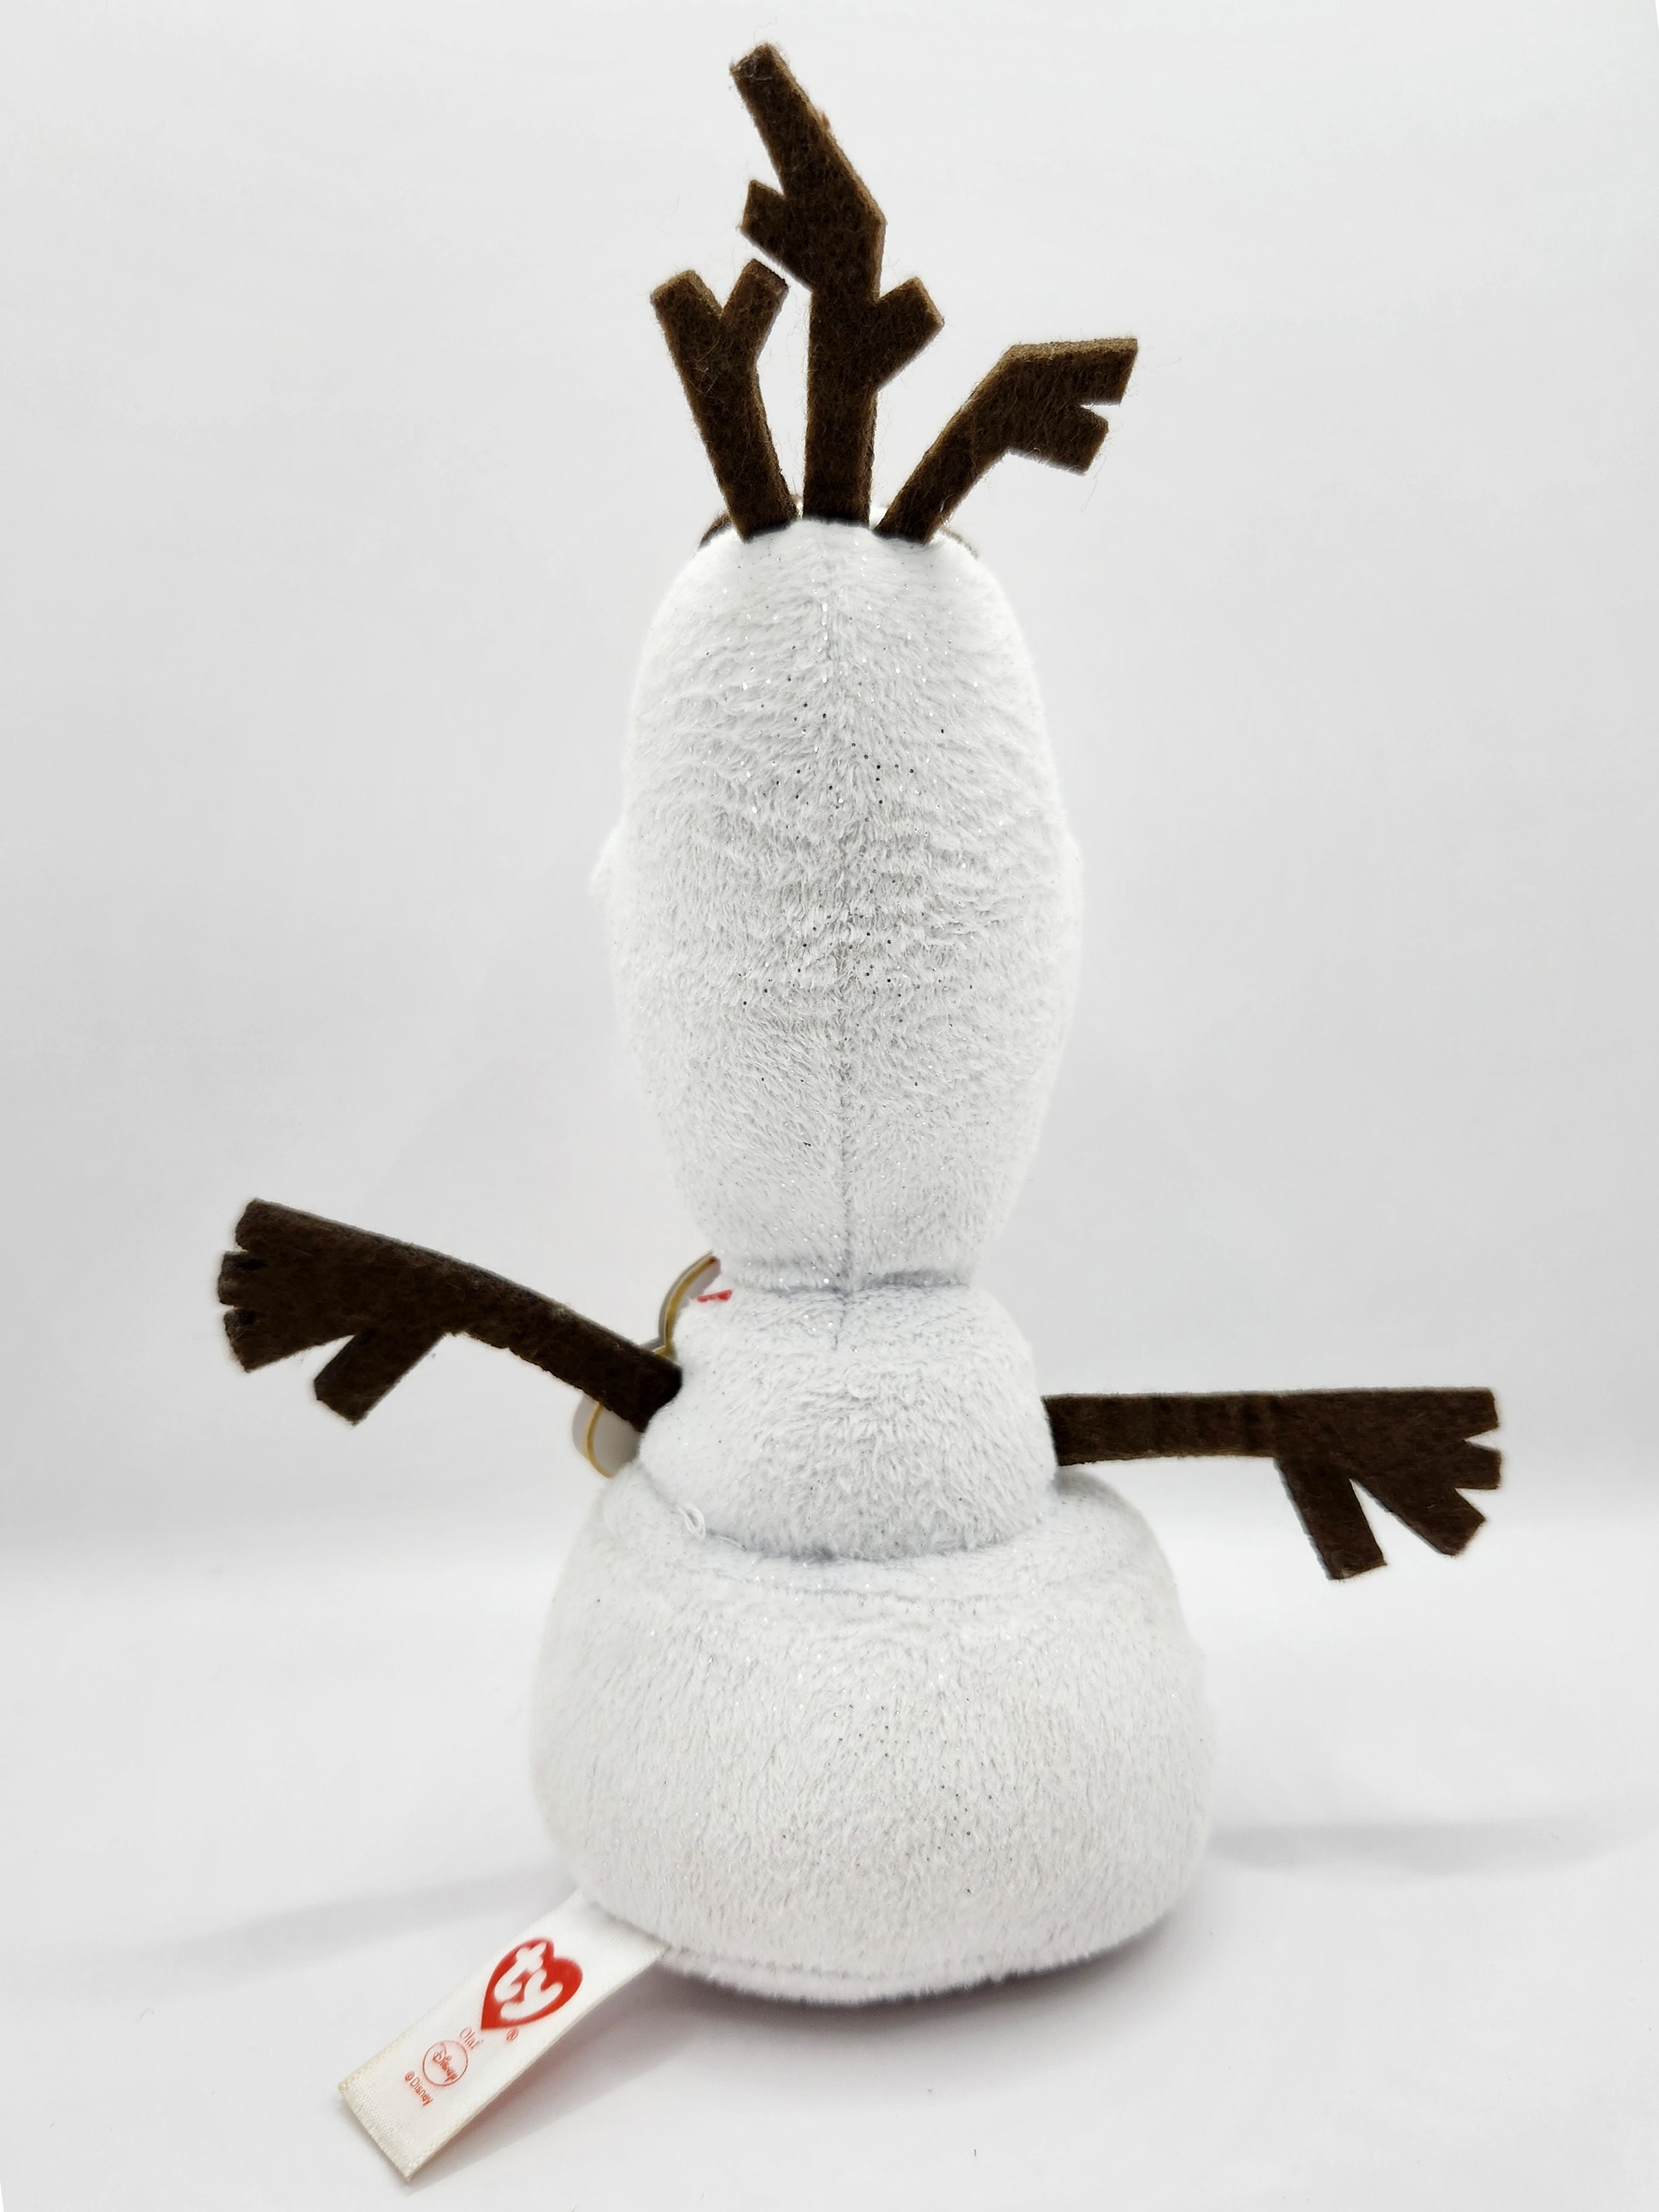 Olaf Snowman Ty Plush Stuffed Animal - RR Games